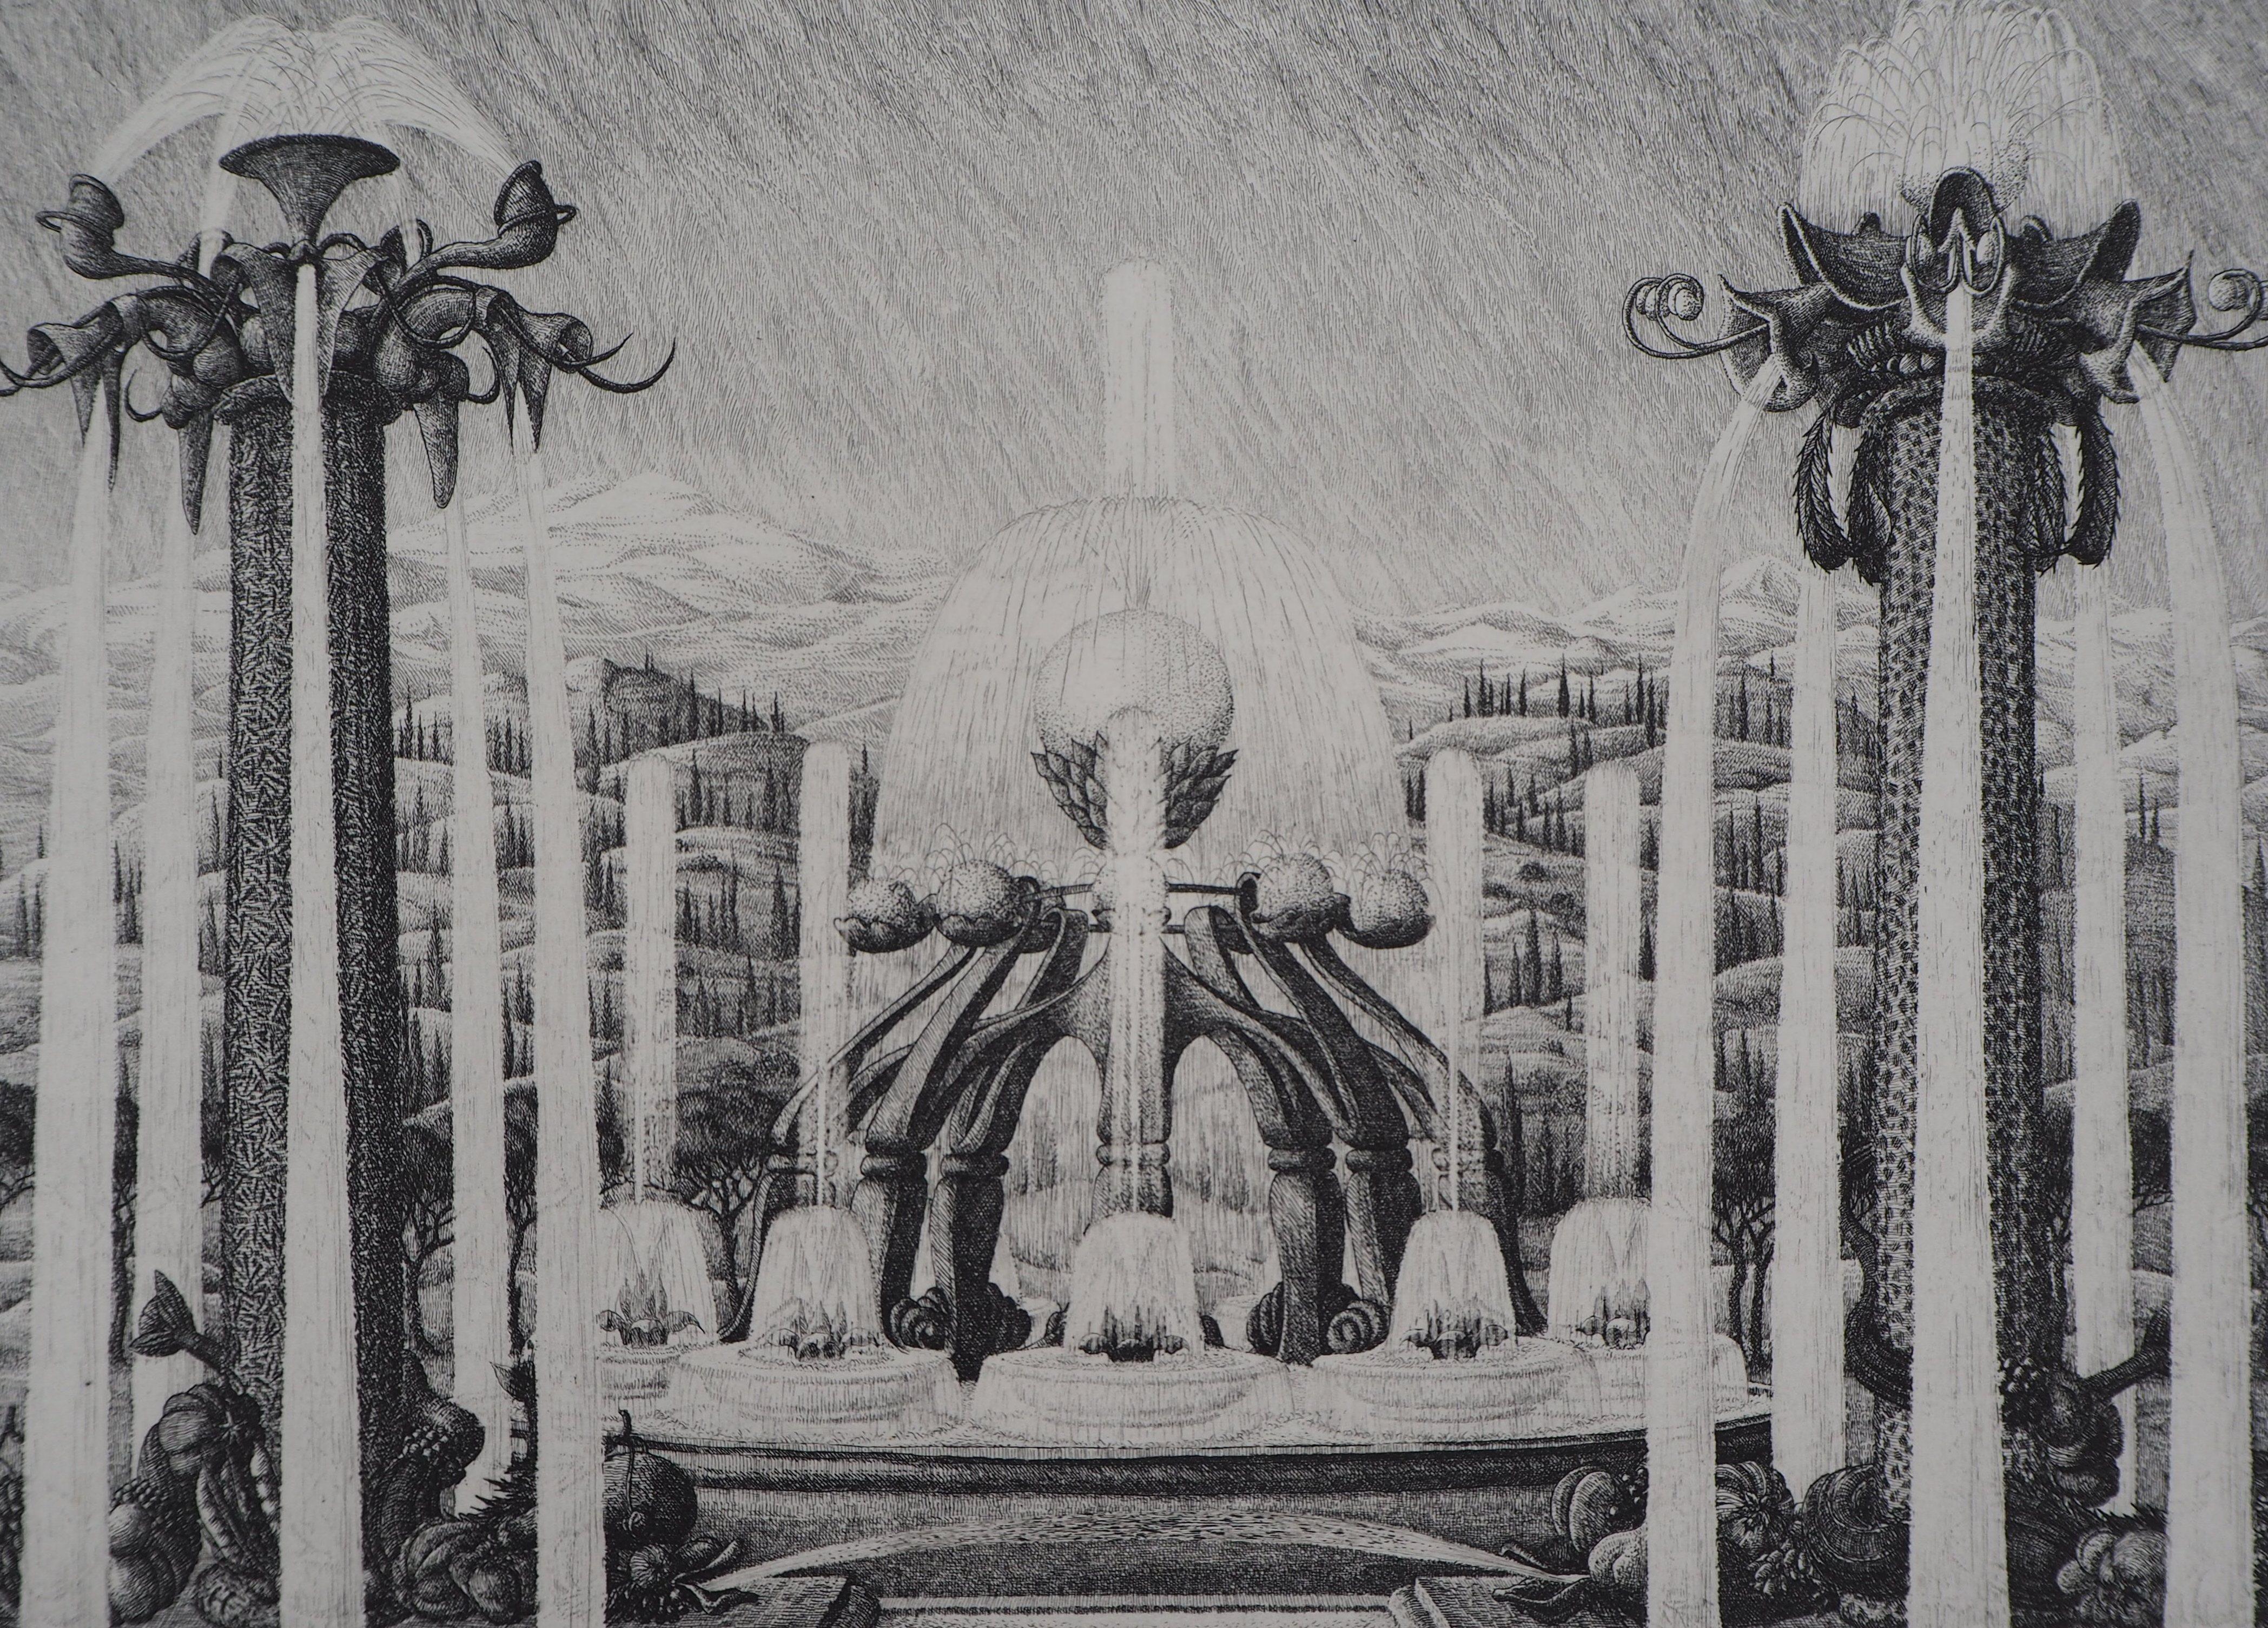 François HOUTIN
Versailles : Die Springbrunnen, 1985

Original-Radierung
Handsigniert mit Bleistift
Nummeriert / 45 in römischen Ziffern
Auf Pergament 25 x 33 cm (ca. 10 x 13 Zoll)

Ausgezeichneter Zustand